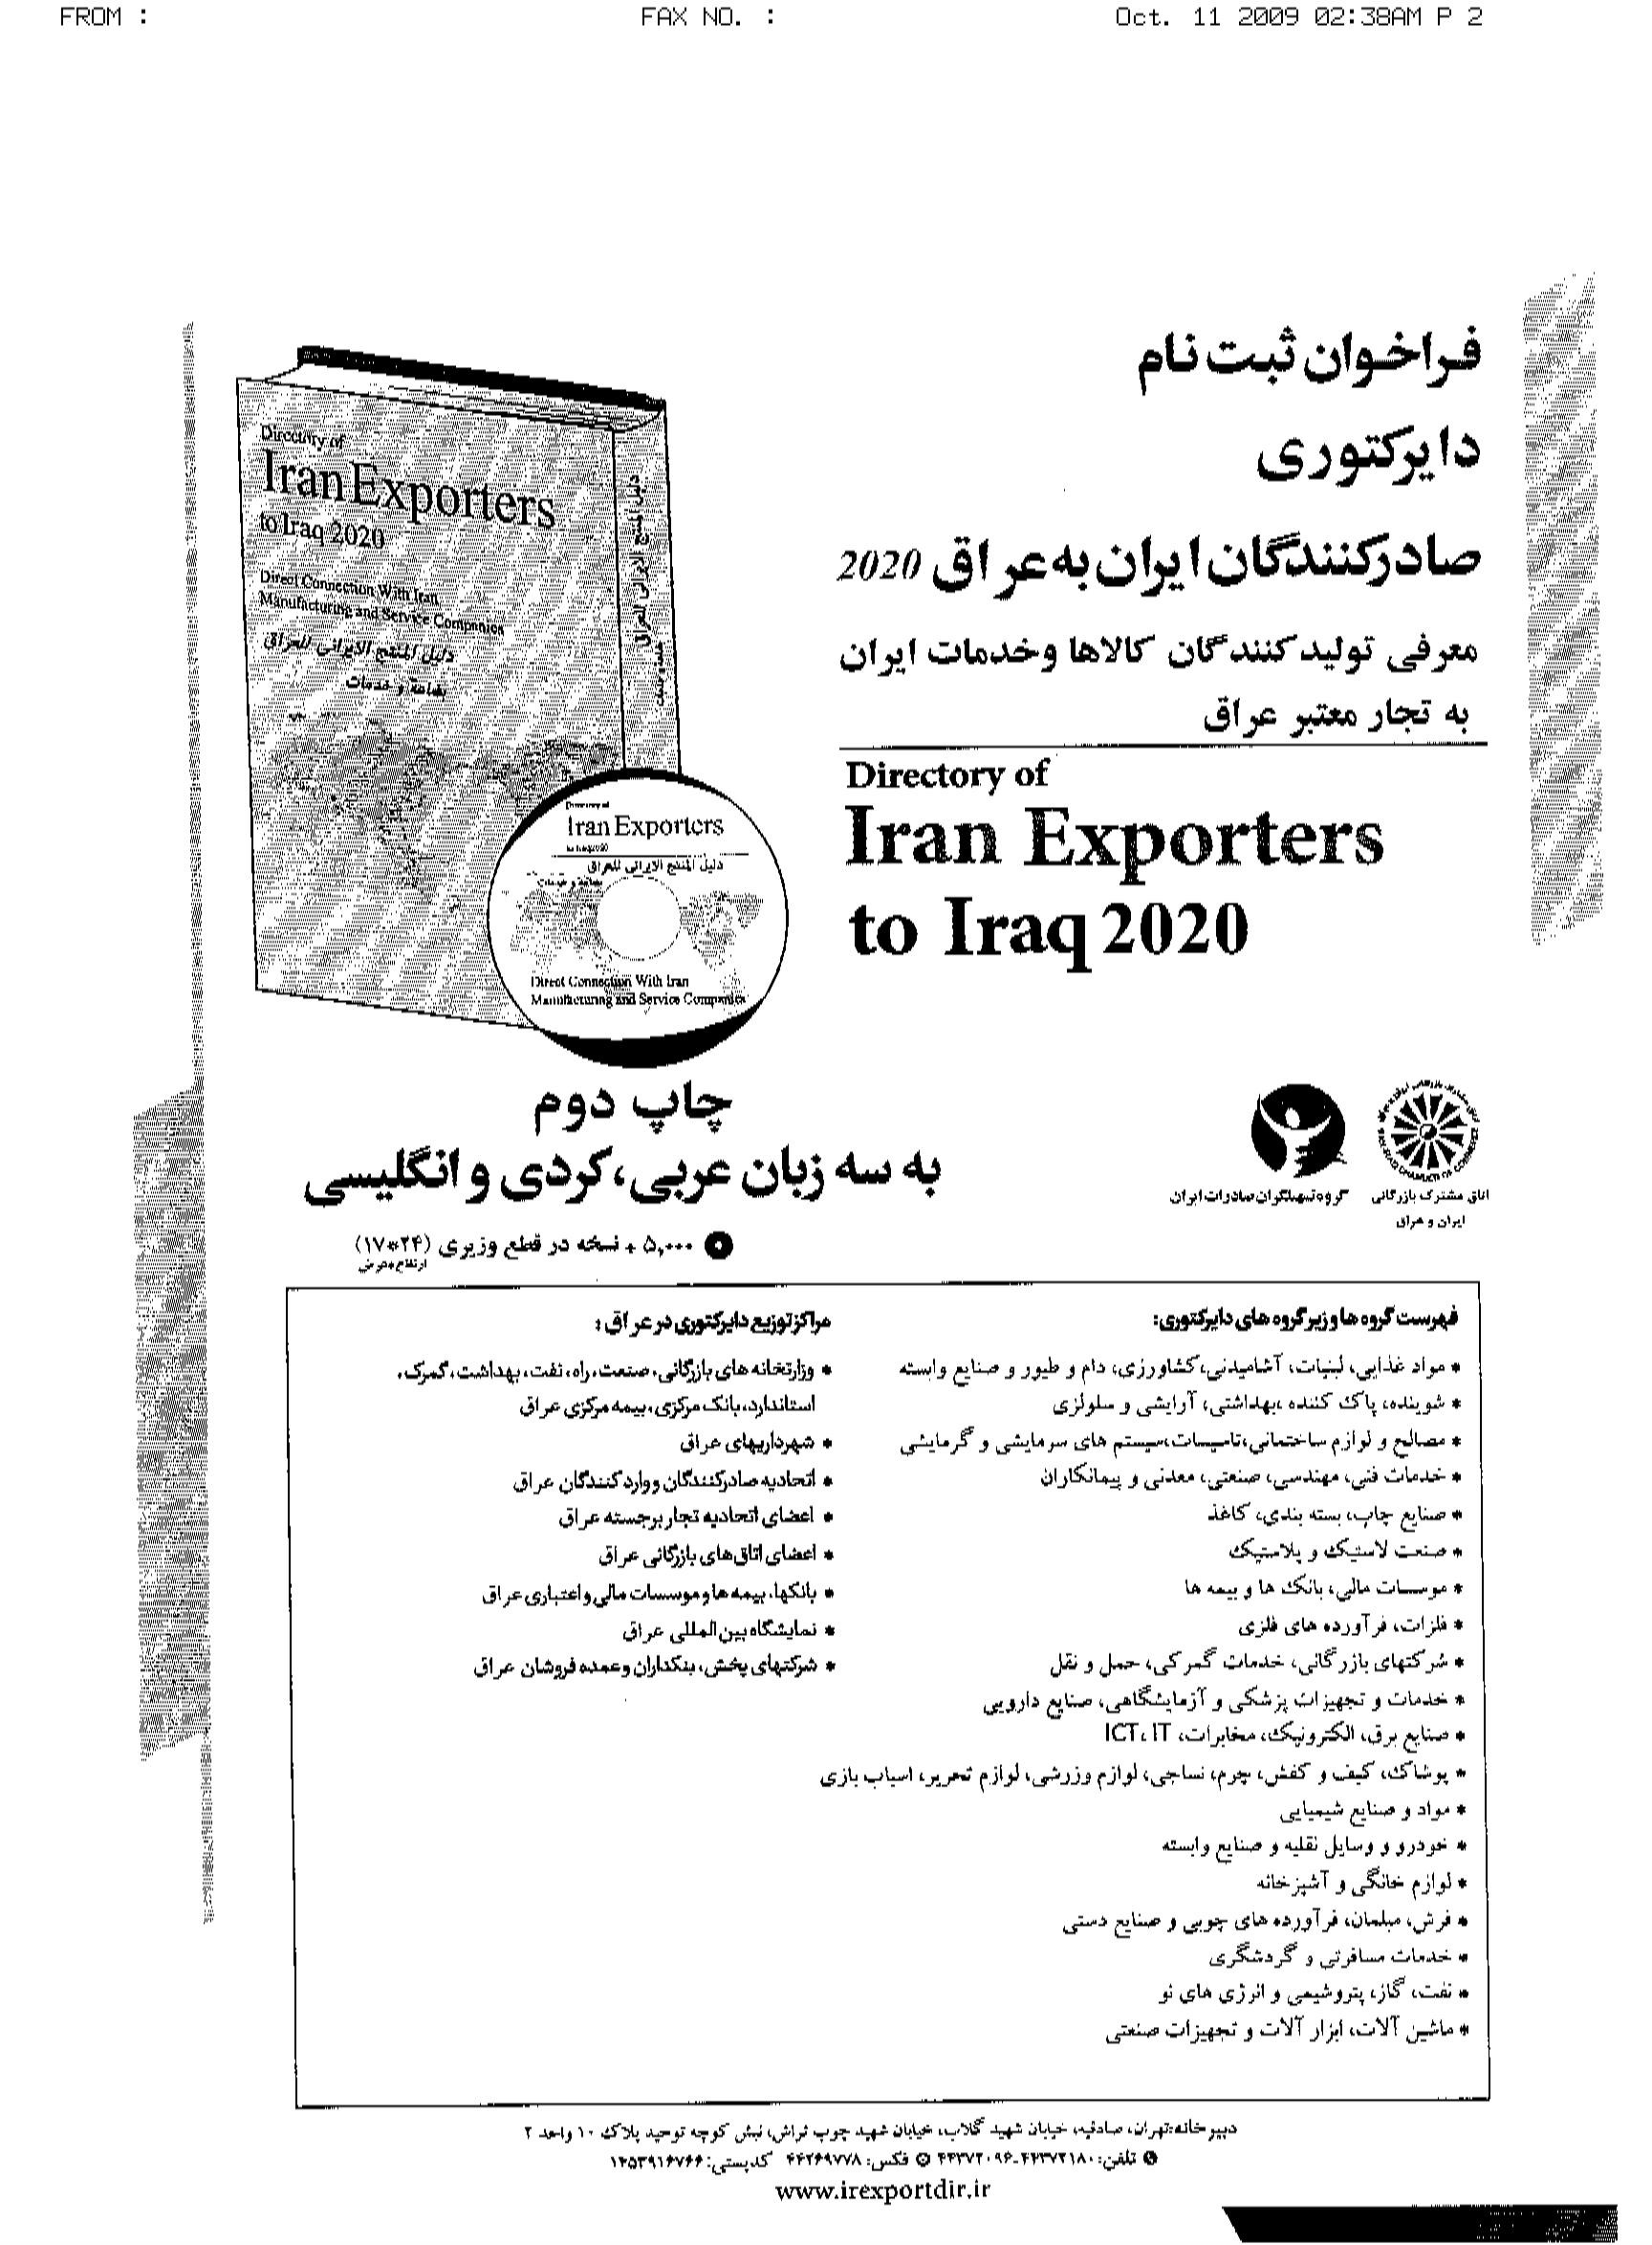 فراخوان معرفی تولید کنندگان و صادر کنندگان کالا ها و خدمات ایران به بازار عراق